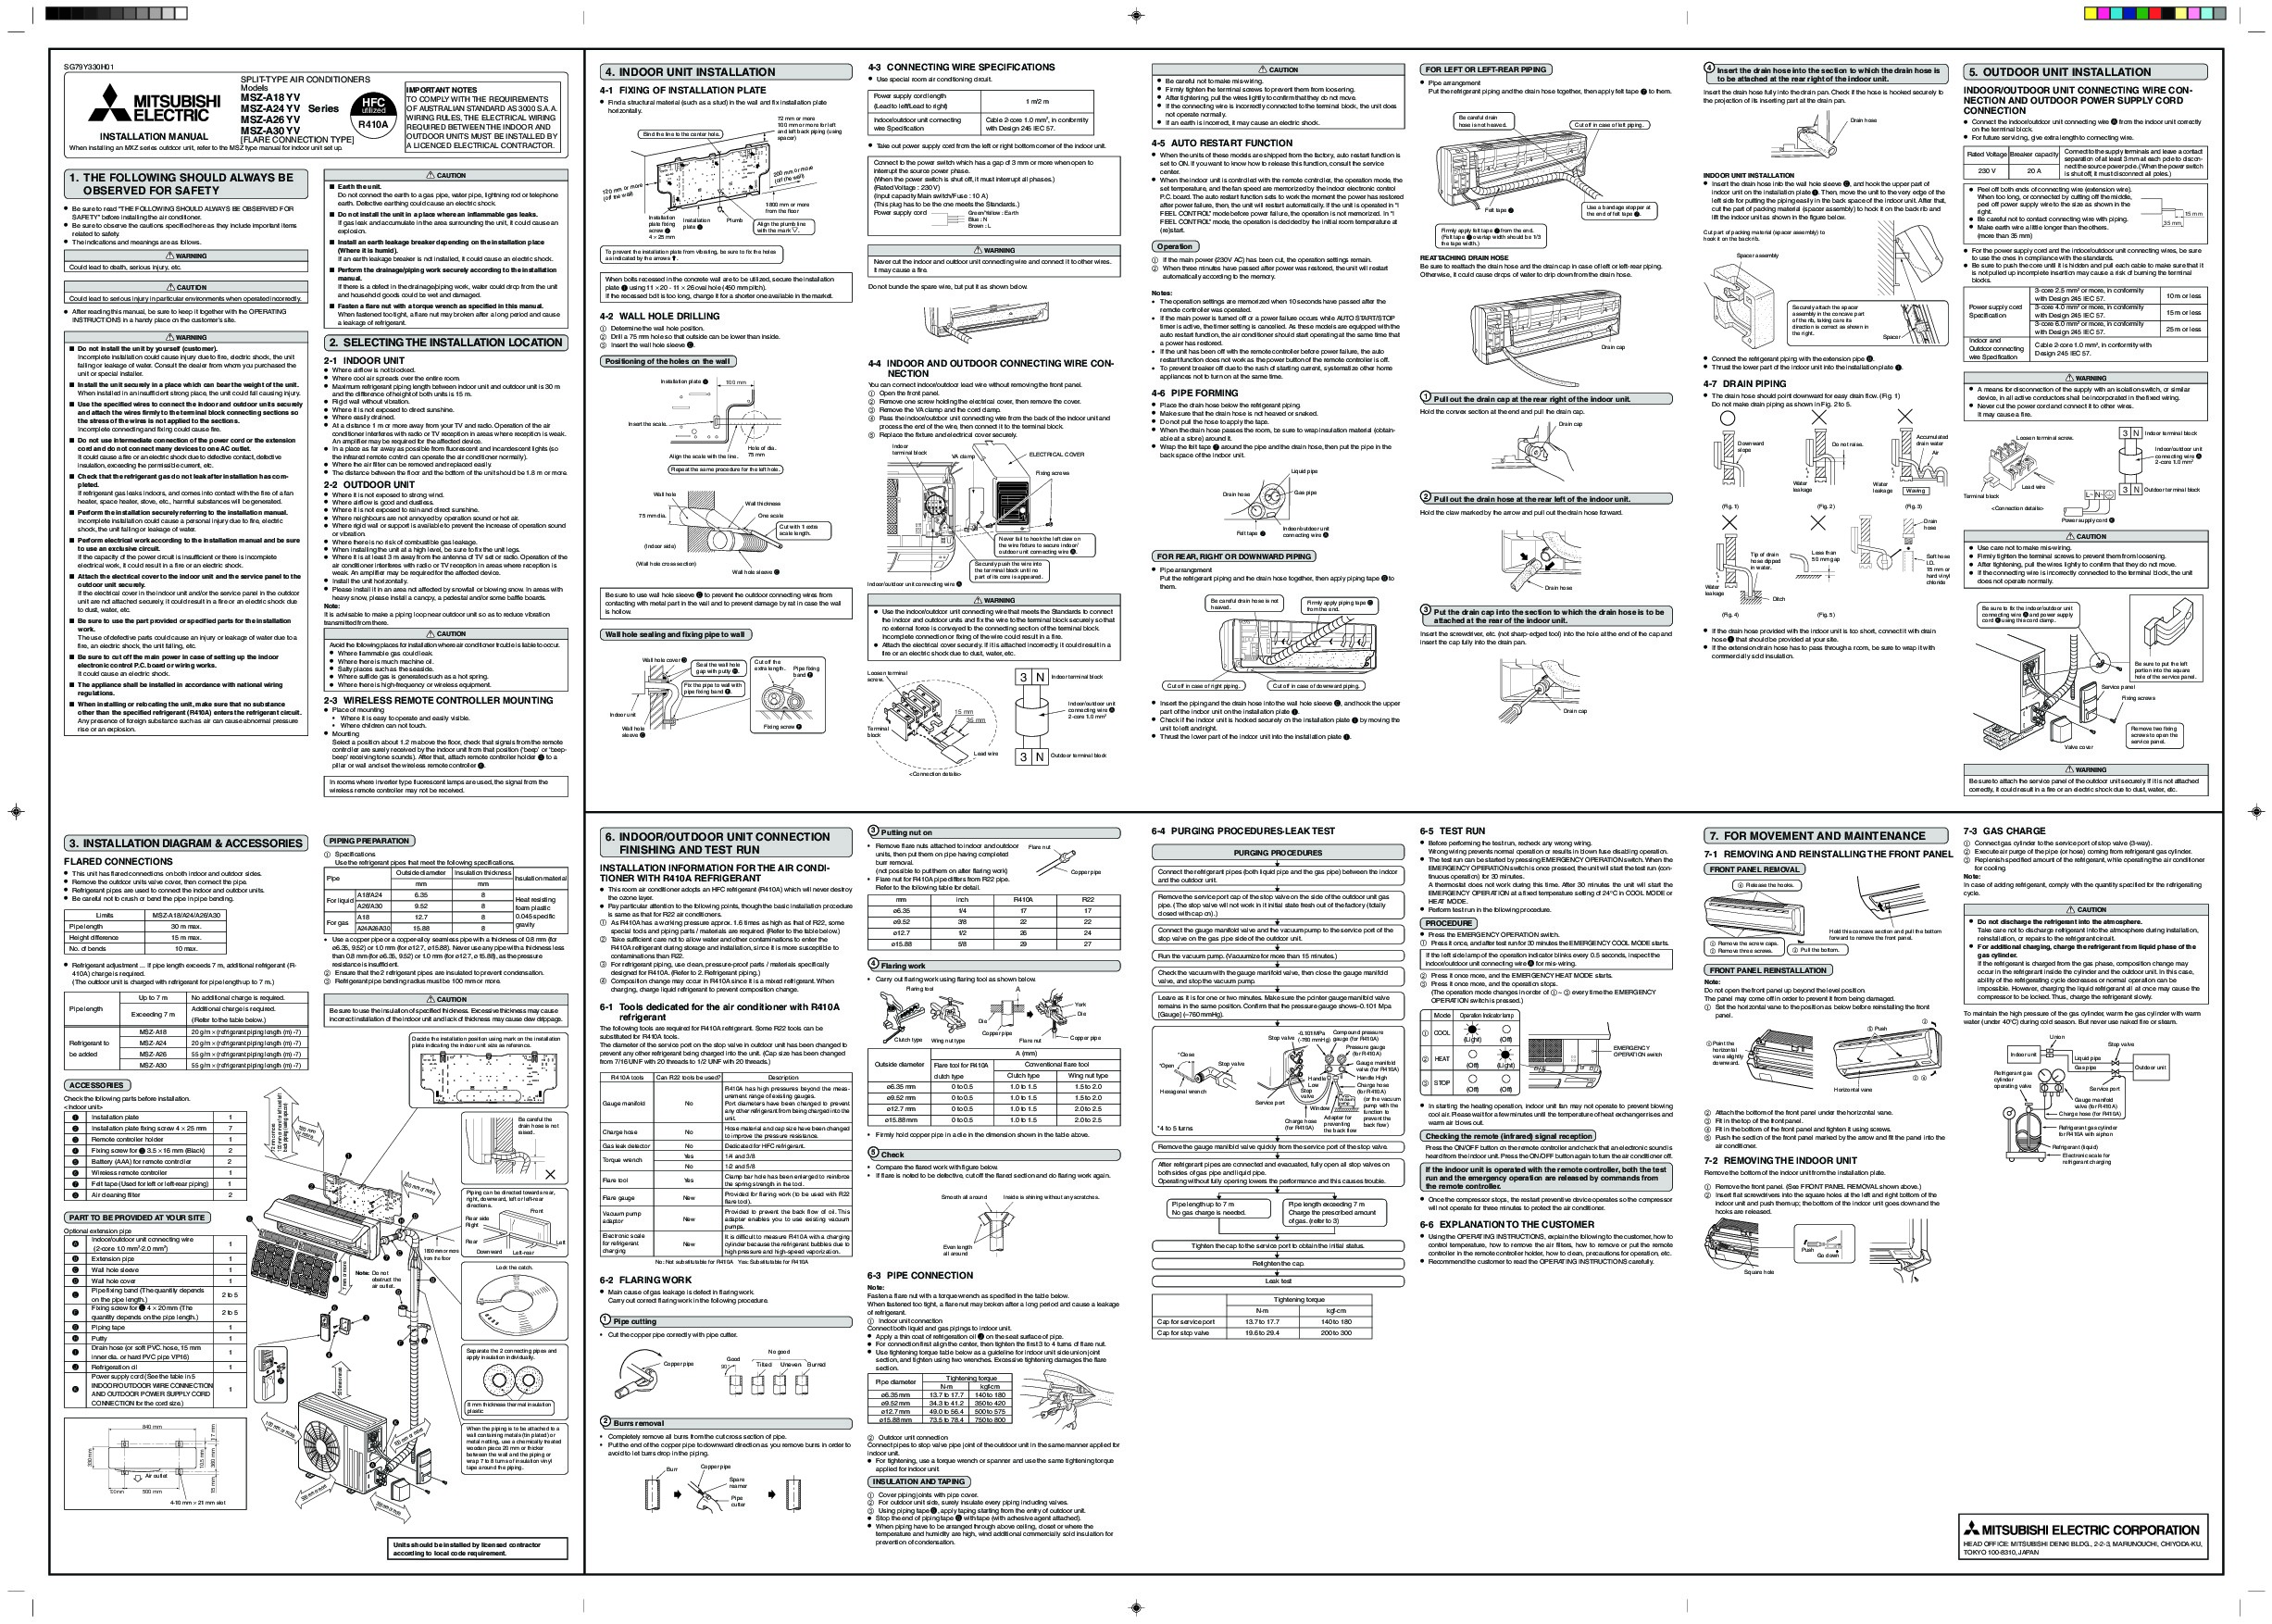 Mitsubishi Wall Air Conditioner User Manual